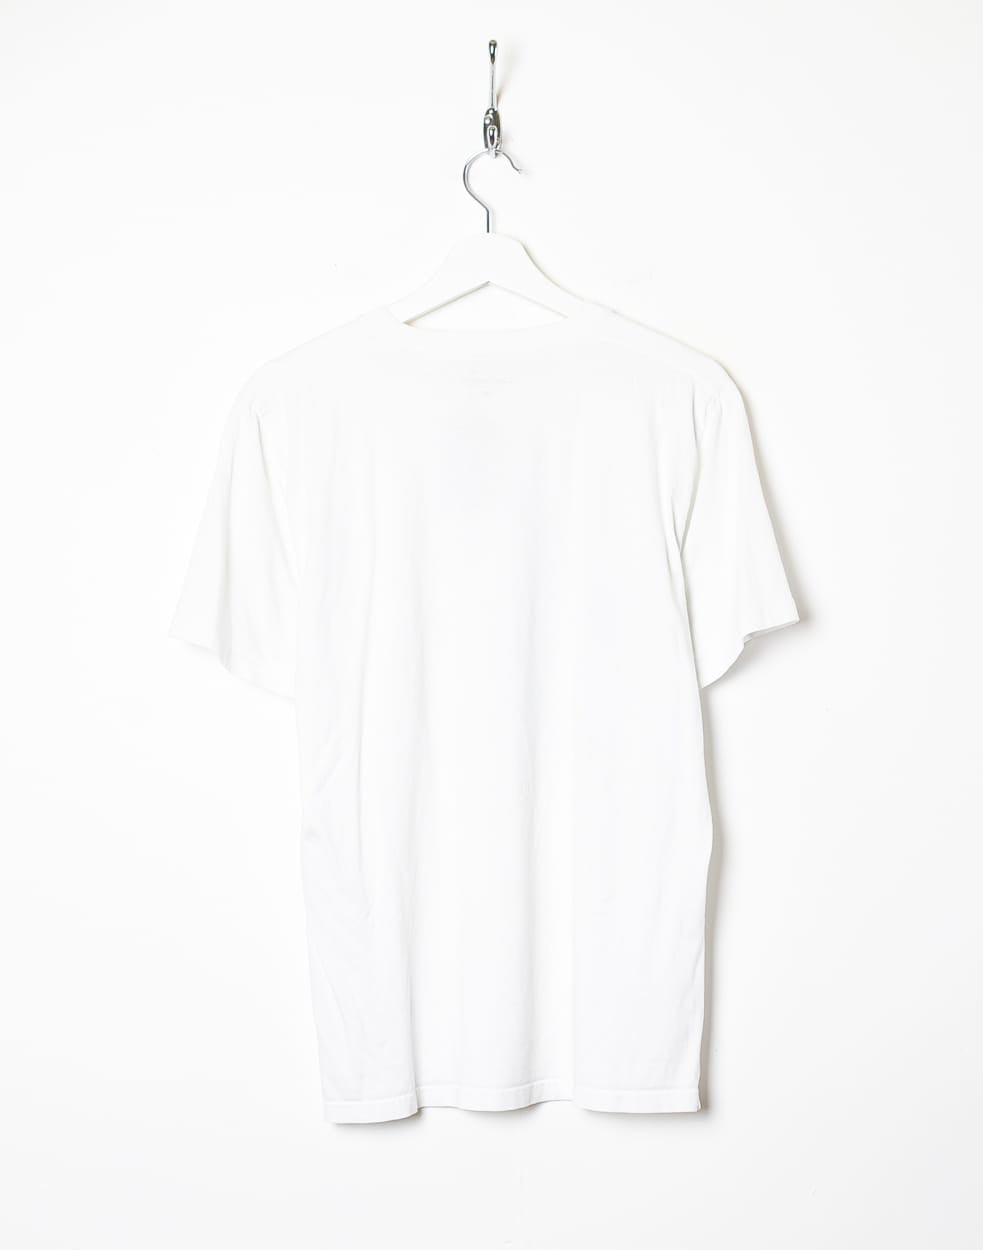 White Carhartt Graphic T-Shirt - Medium